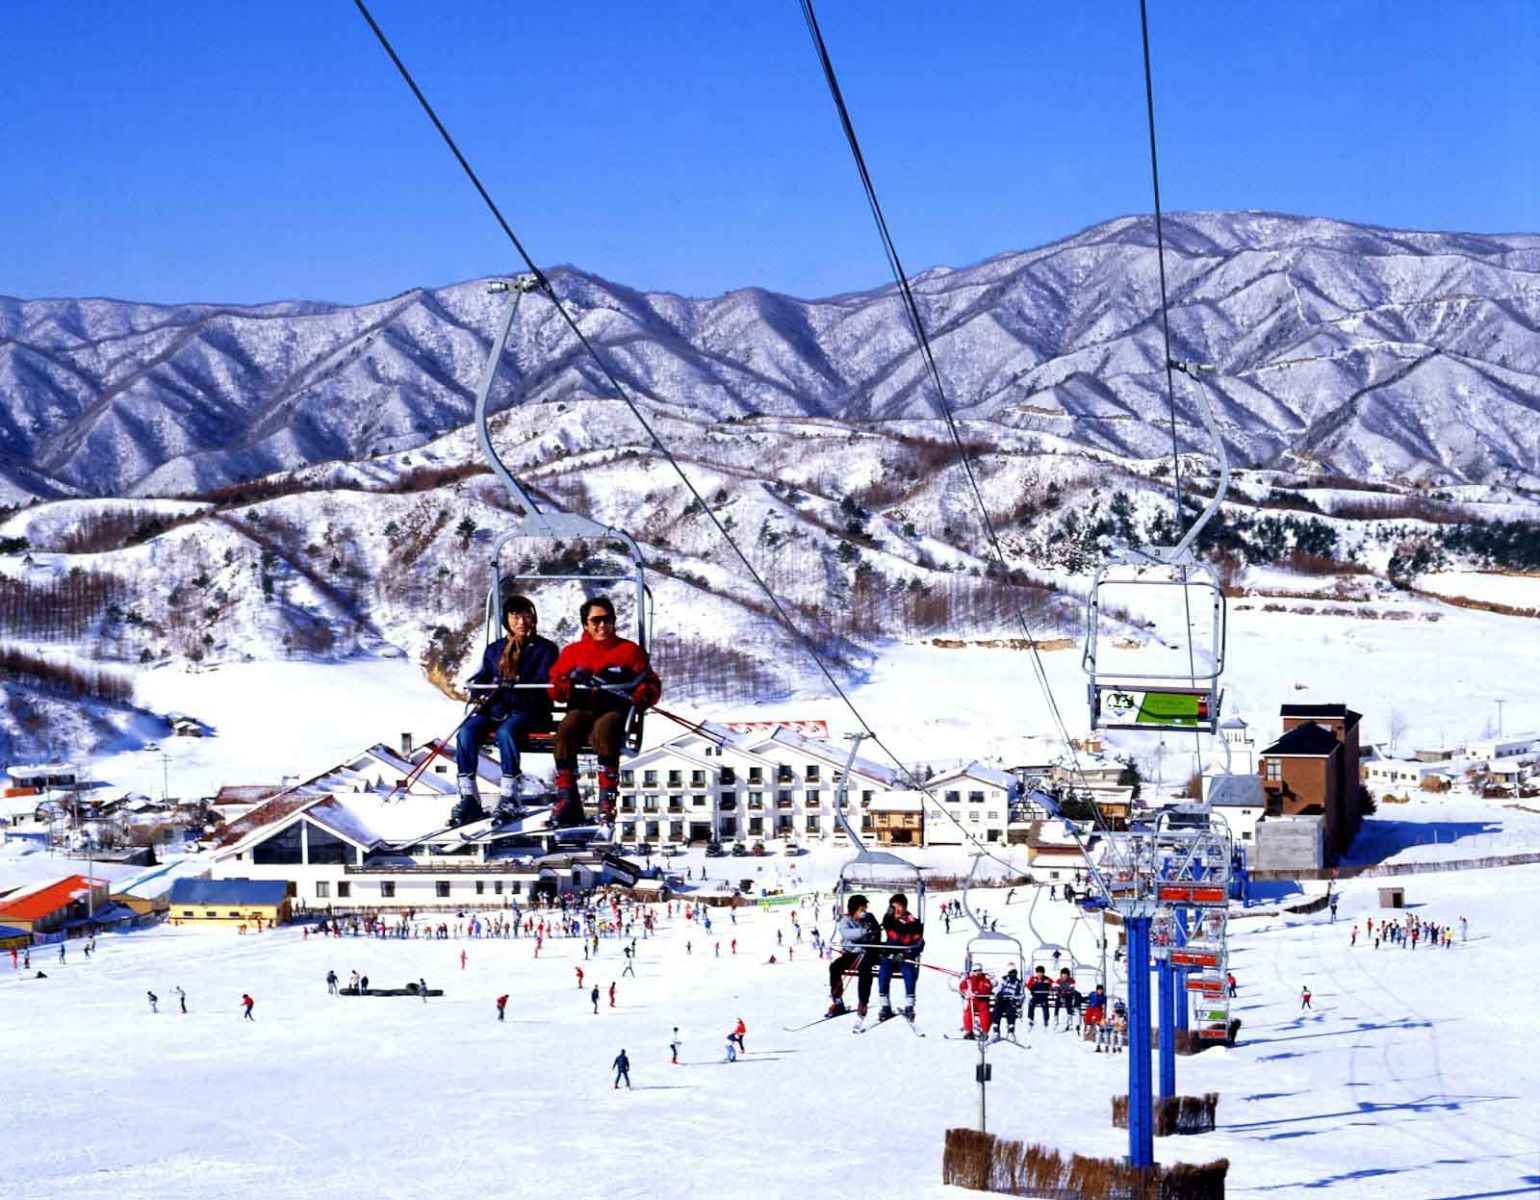 10 địa điểm du lịch Hàn Quốc mùa đông( tháng 12,1,2) có thể khiến bạn say mê